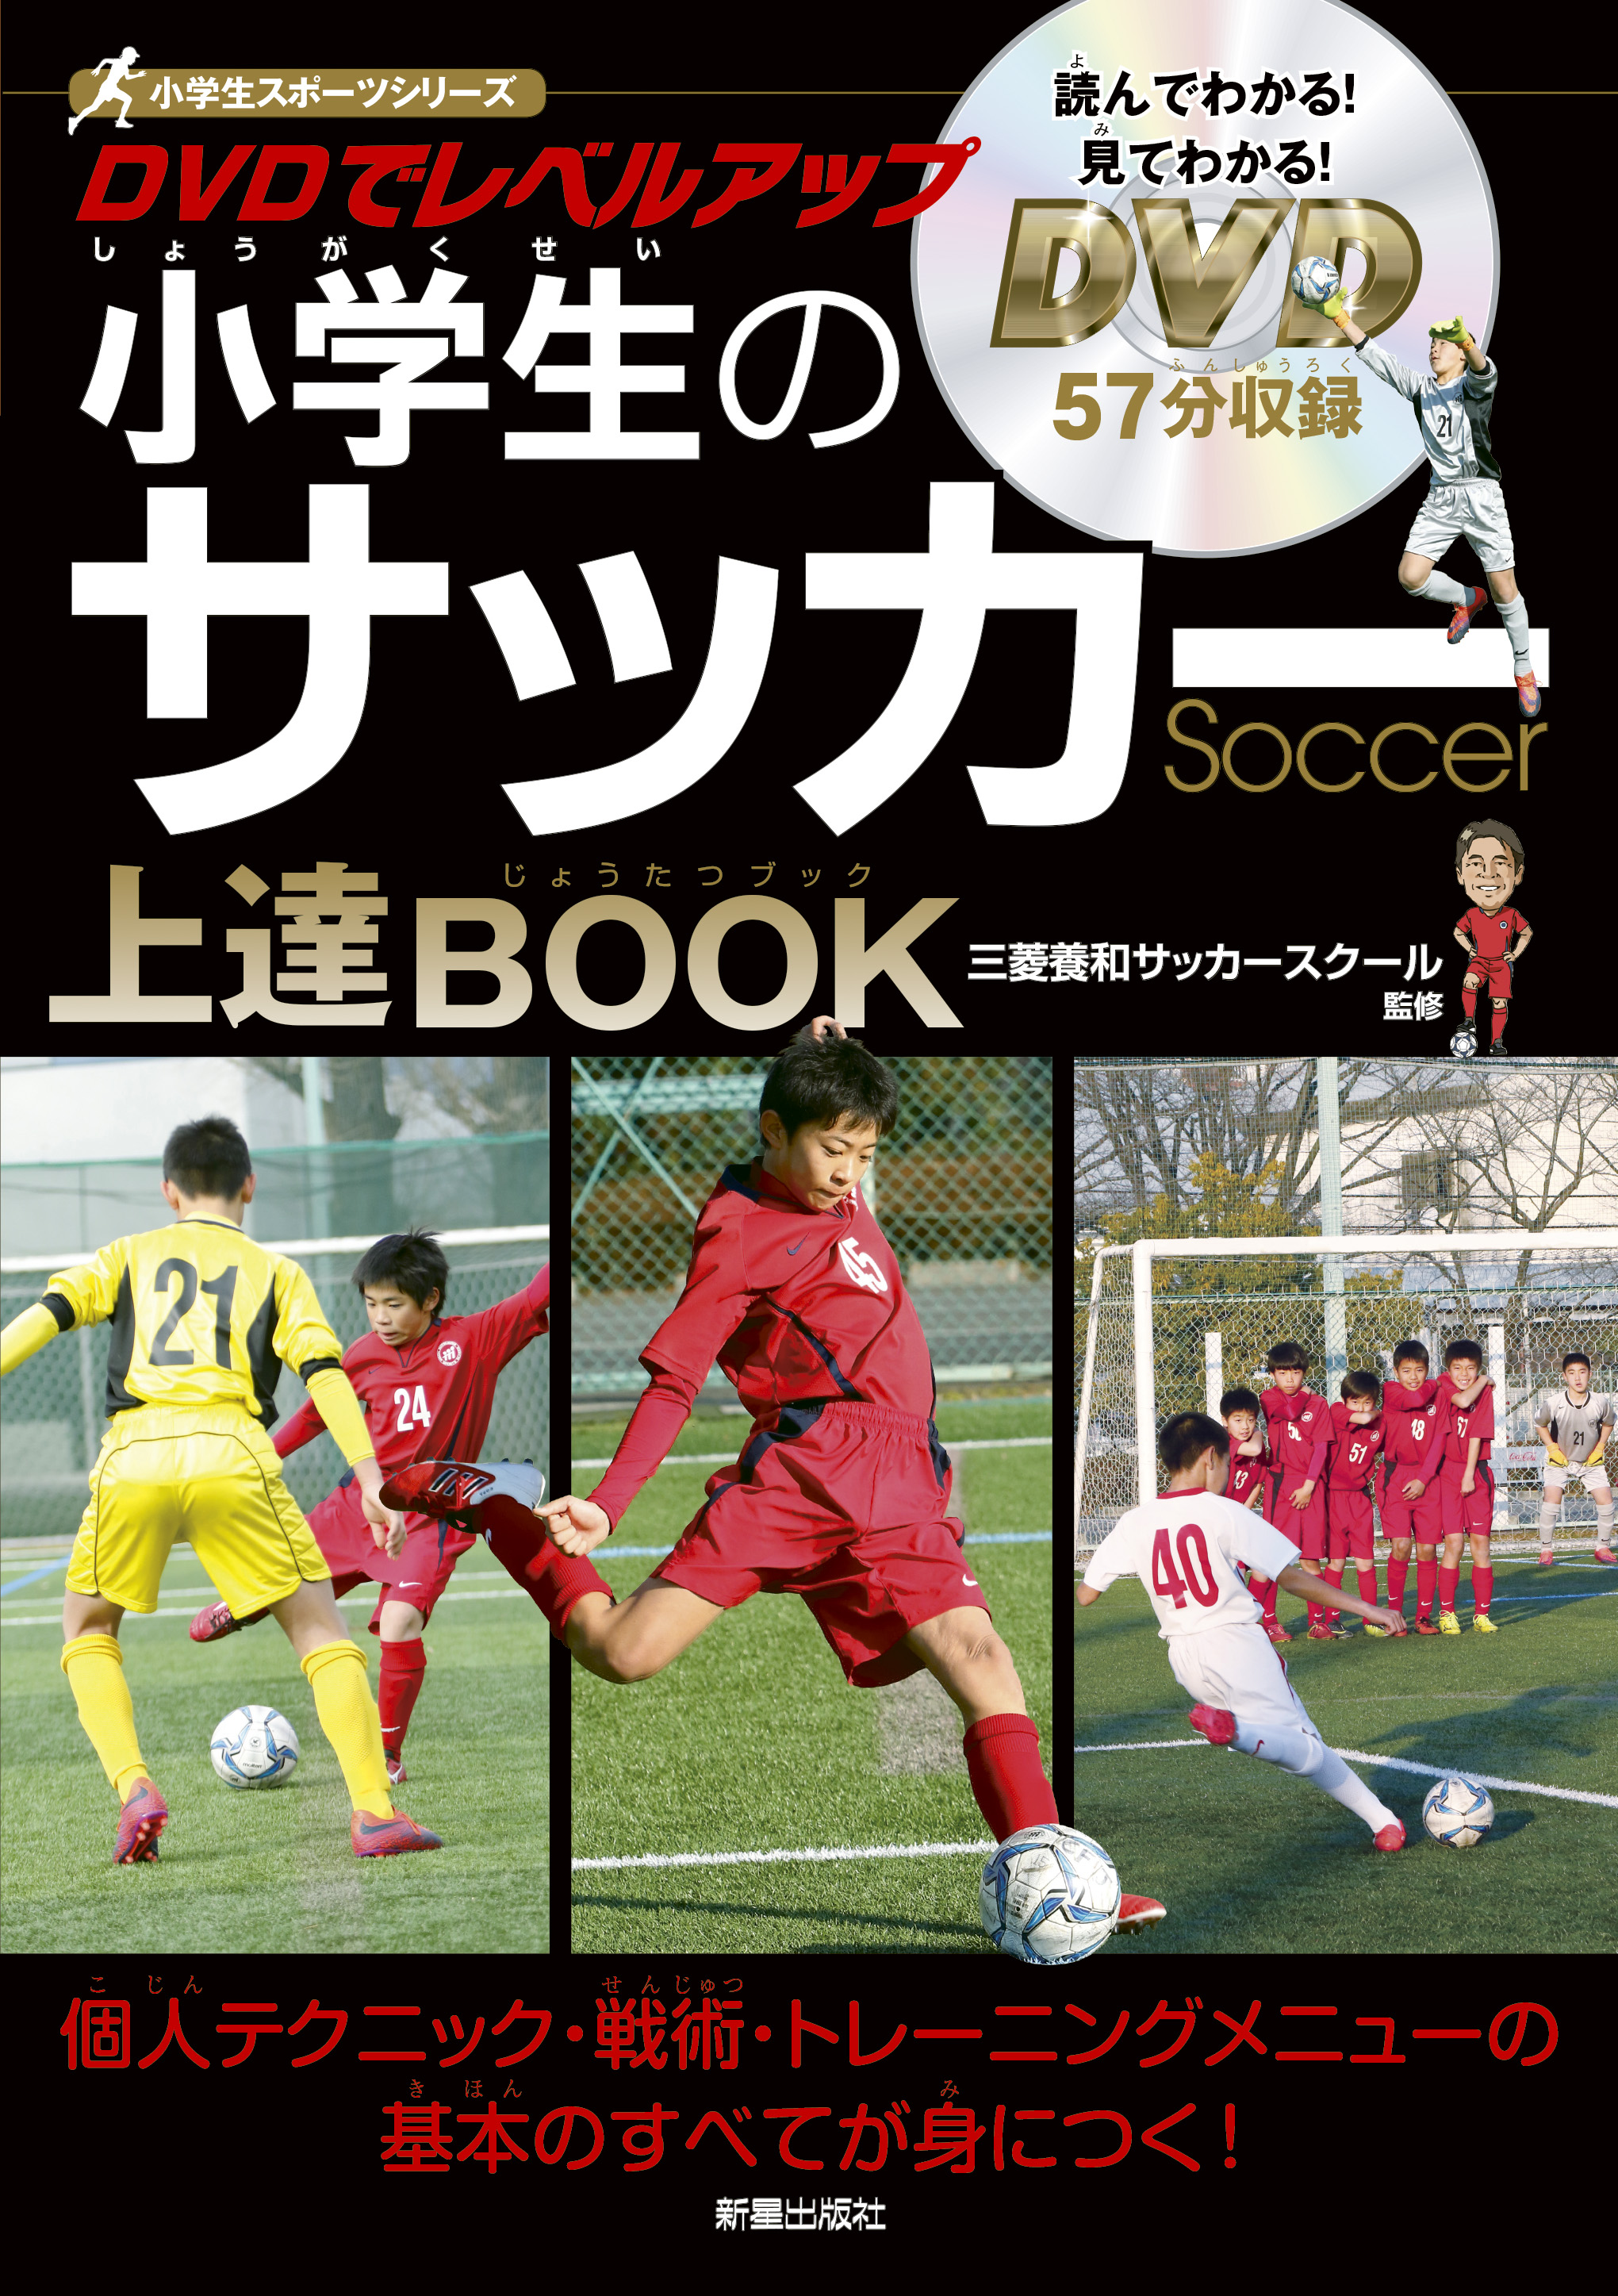 サッカー スーパーレベルアップdvd Book スーパープレー トレーニング ドリブル フェイント リフティング 一人でできる練習法 上達 アウトレット Book